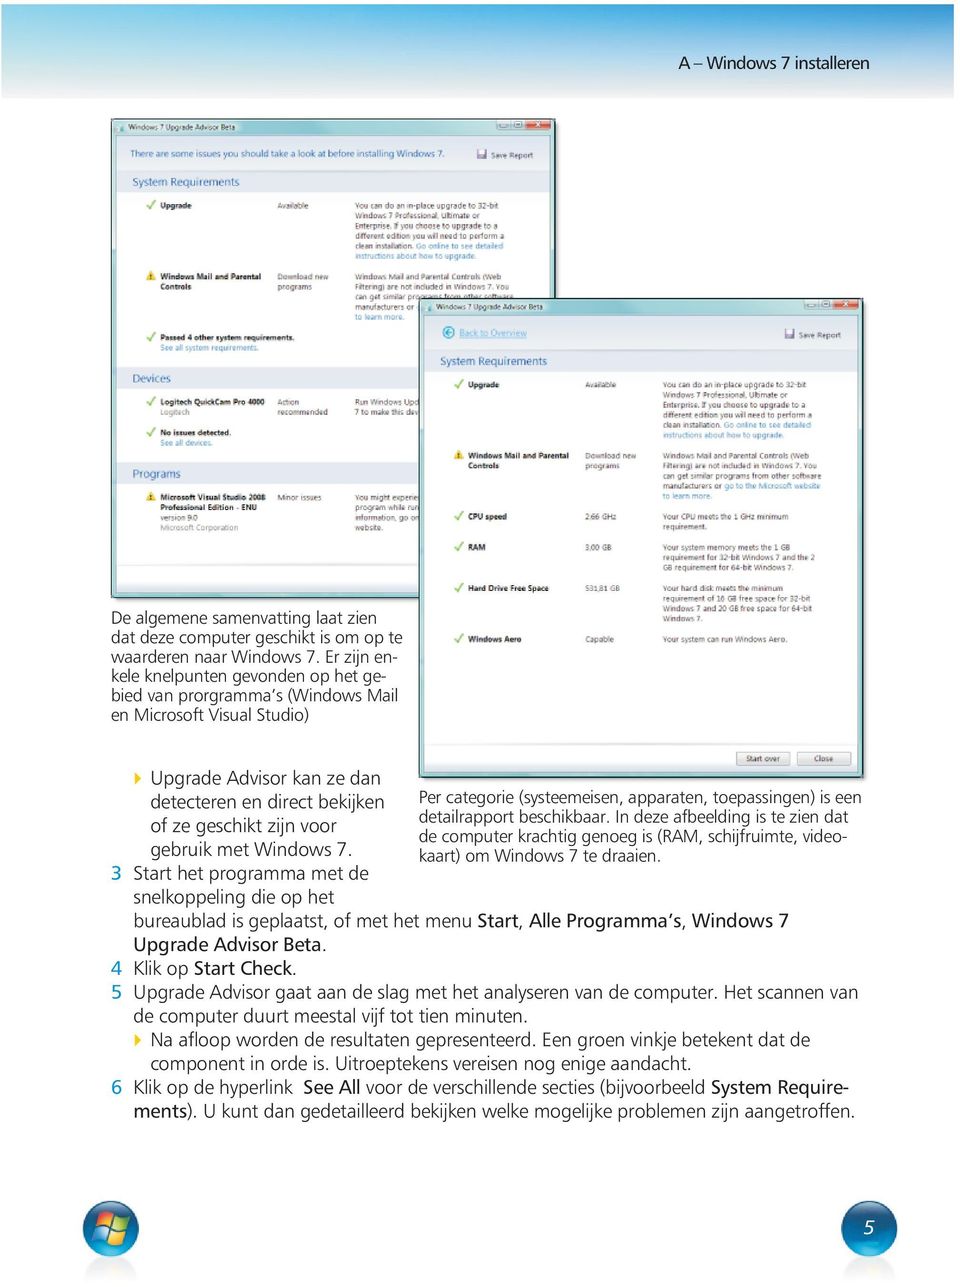 met Windows 7. 3 Start het programma met de snelkoppeling die op het Per categorie (systeemeisen, apparaten, toepassingen) is een detailrapport beschikbaar.